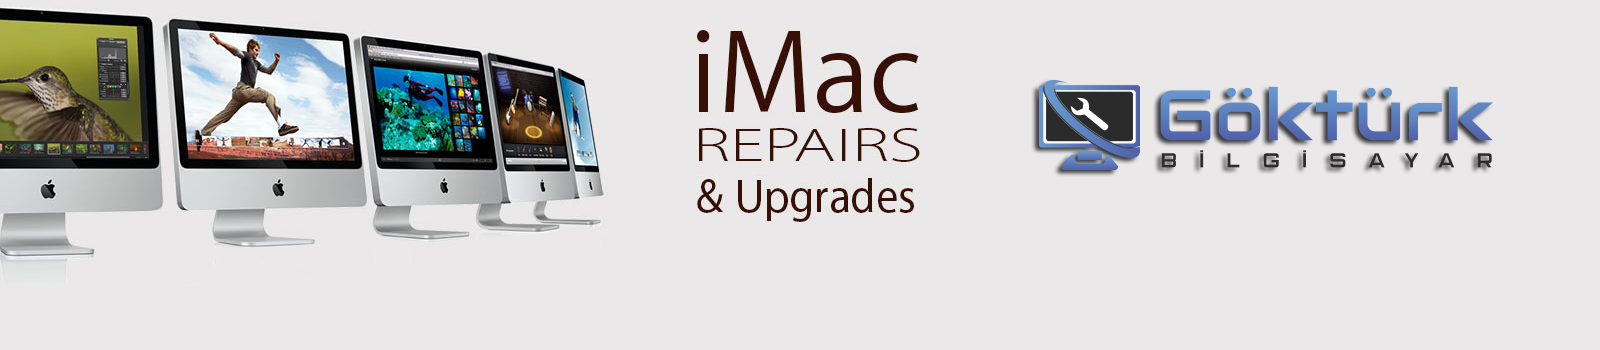 iMac SSD Değişimi -  iMac Hızlandırma